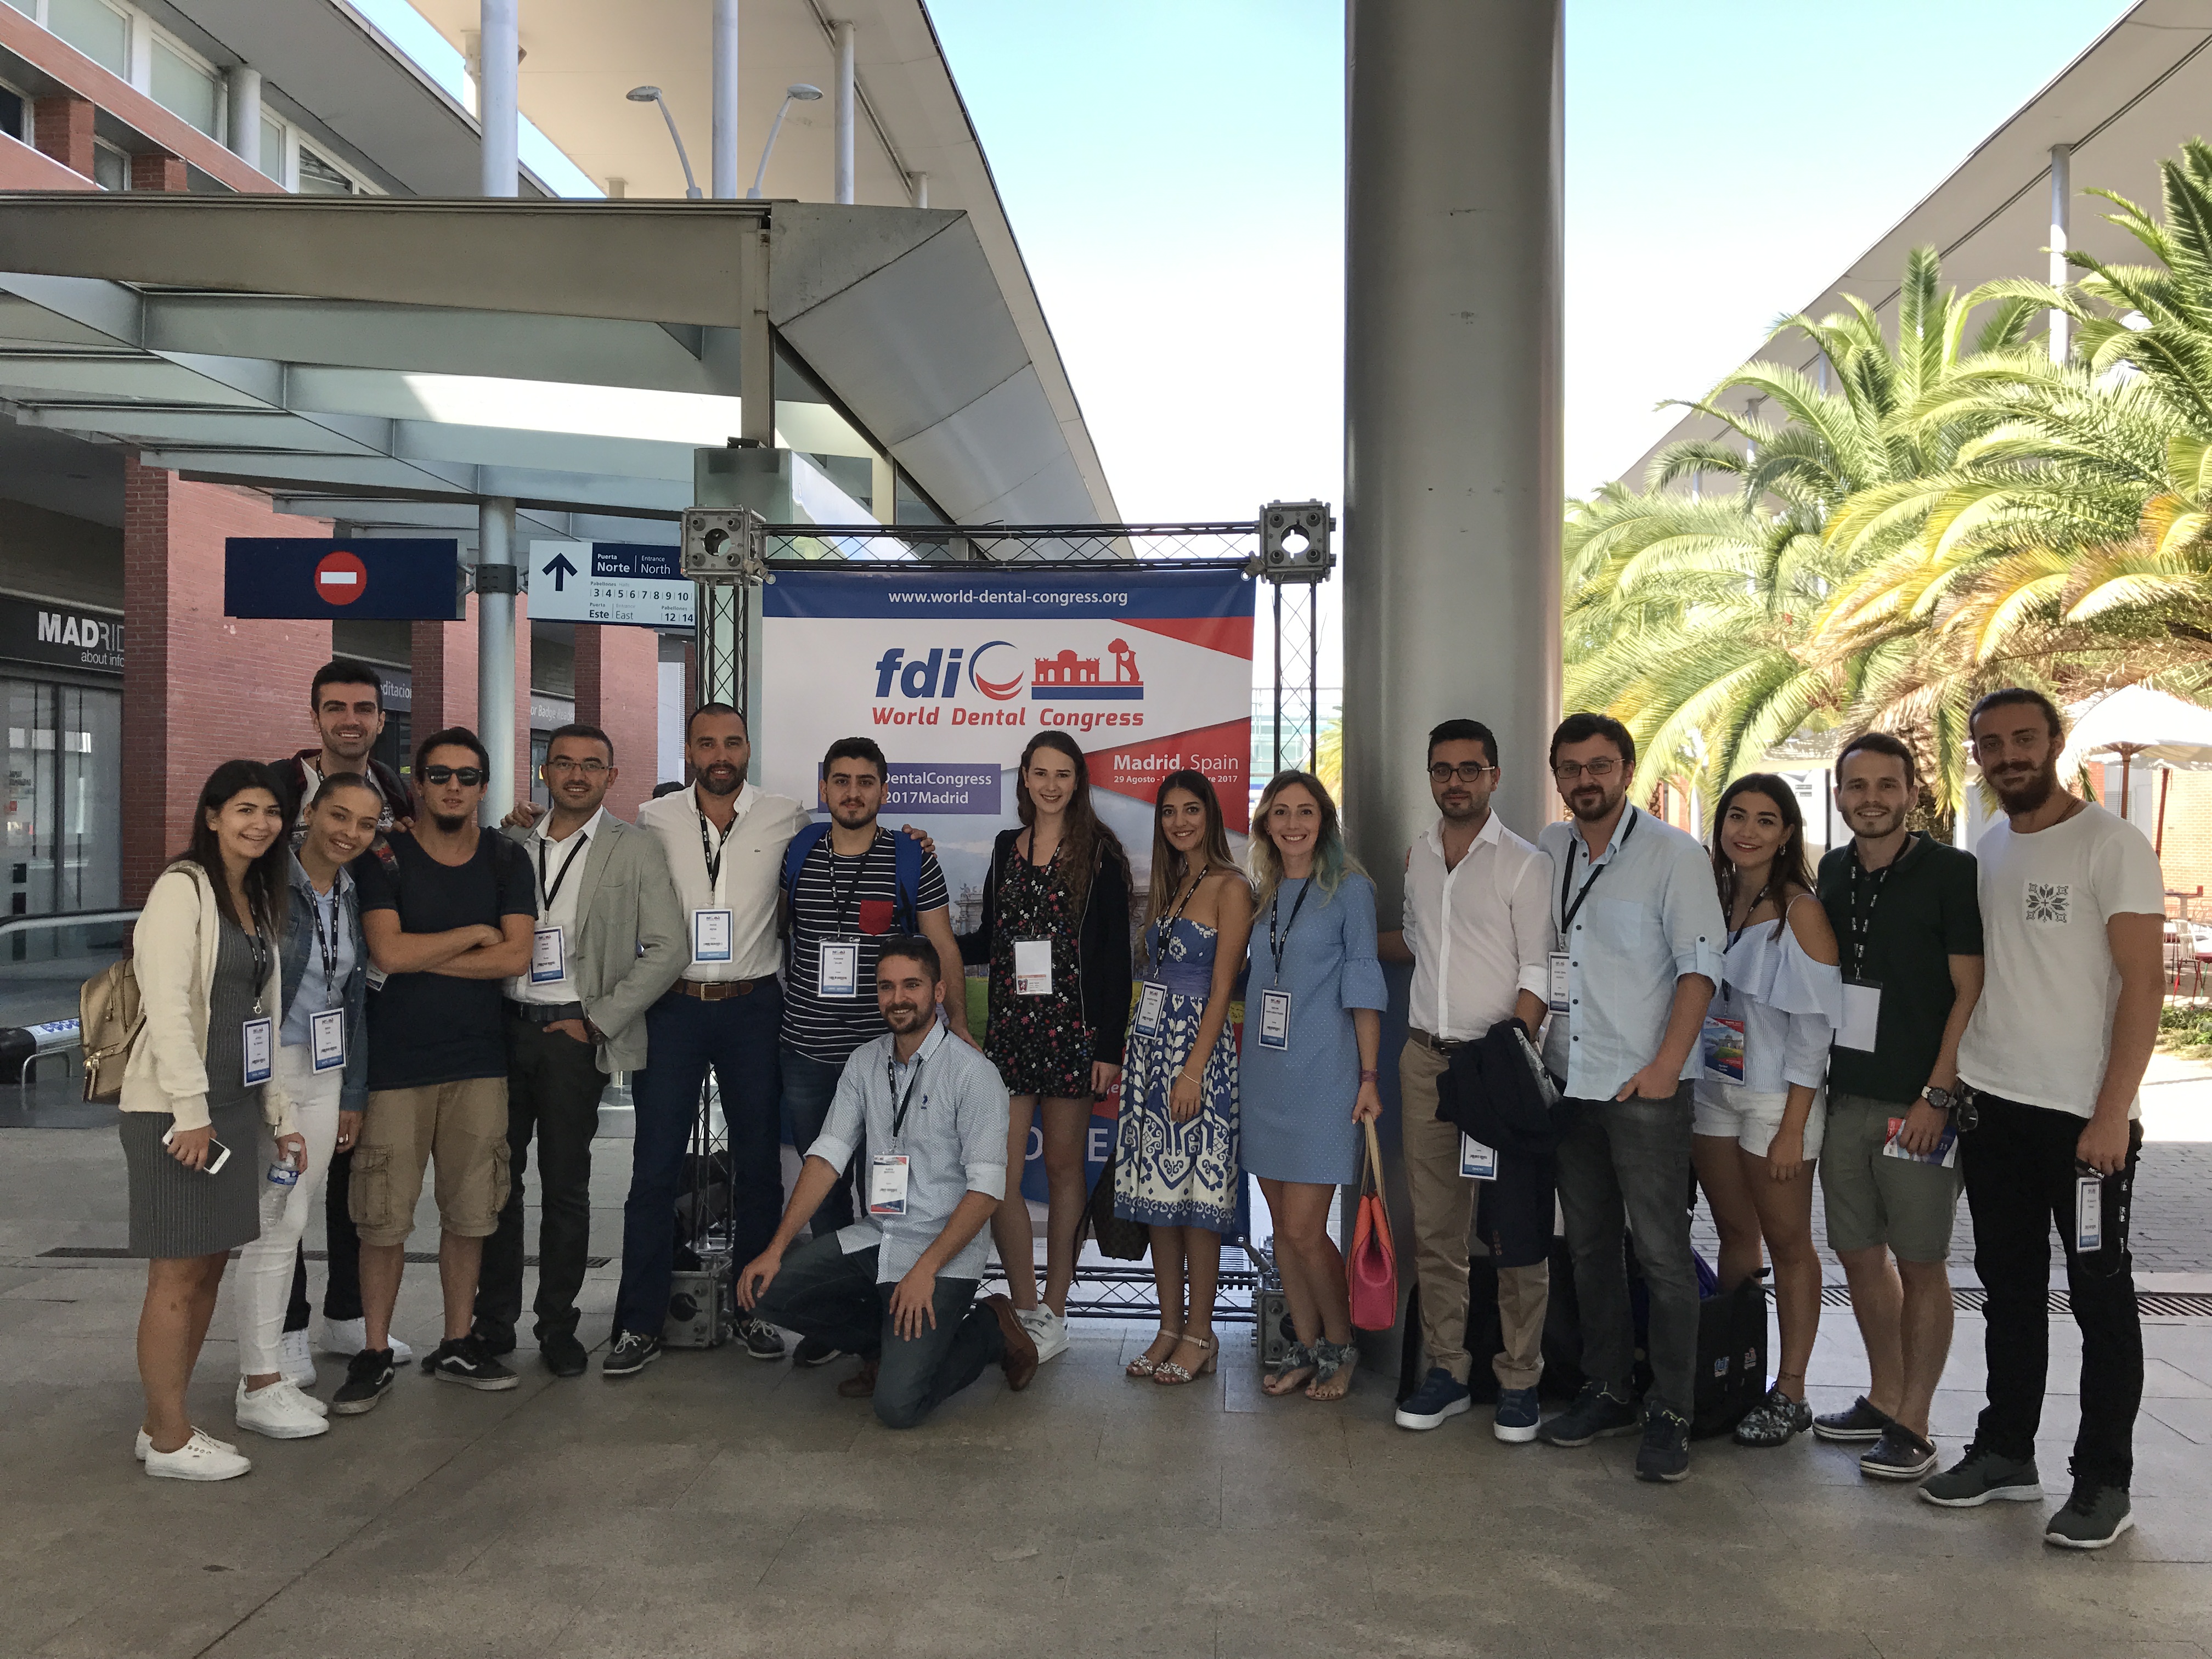 Kuzey Kıbrıs Türk Cumhuriyeti Yakın Doğu Üniversitesi’nin Katılımı İle Madrid’de Düzenlenen Uluslararası Diş Hekimliği Kongresinde Temsil Edildi